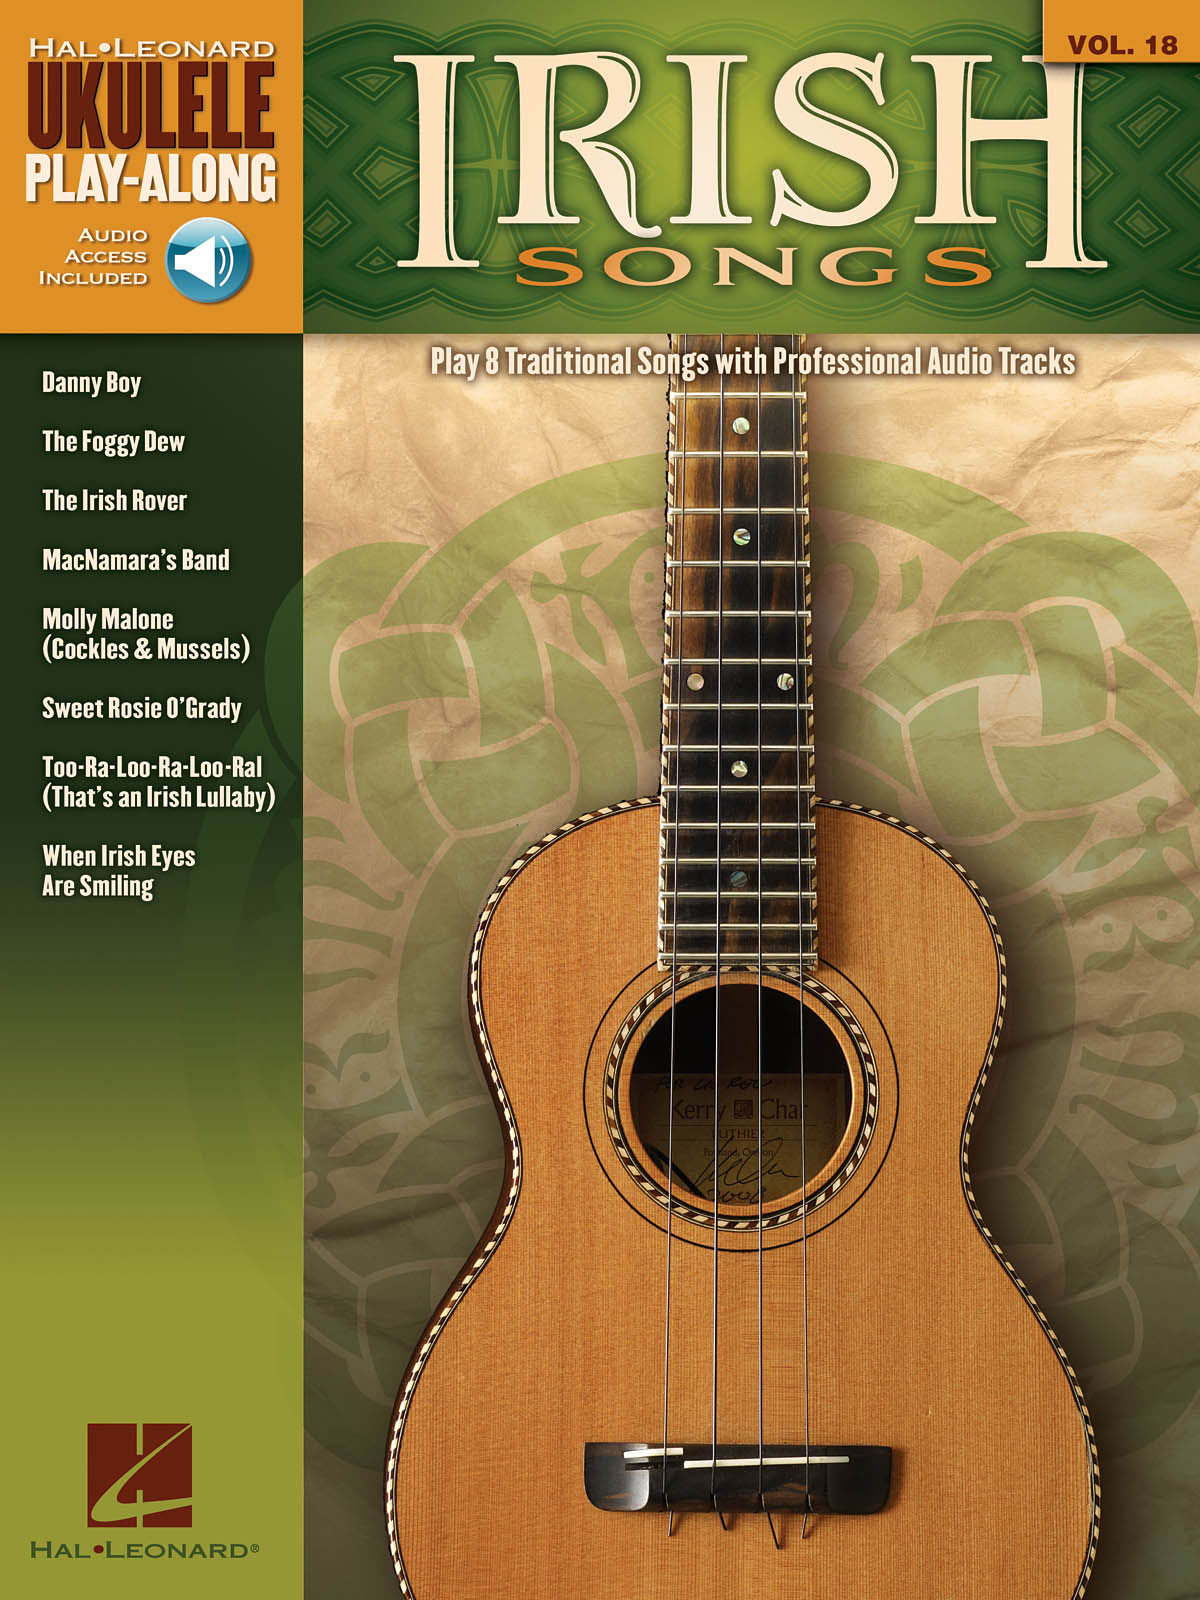 HAL LEONARD UKULELE PLAY ALONG VOLUME 18 IRISH SONGS + AUDIO TRACKS - UKULELE